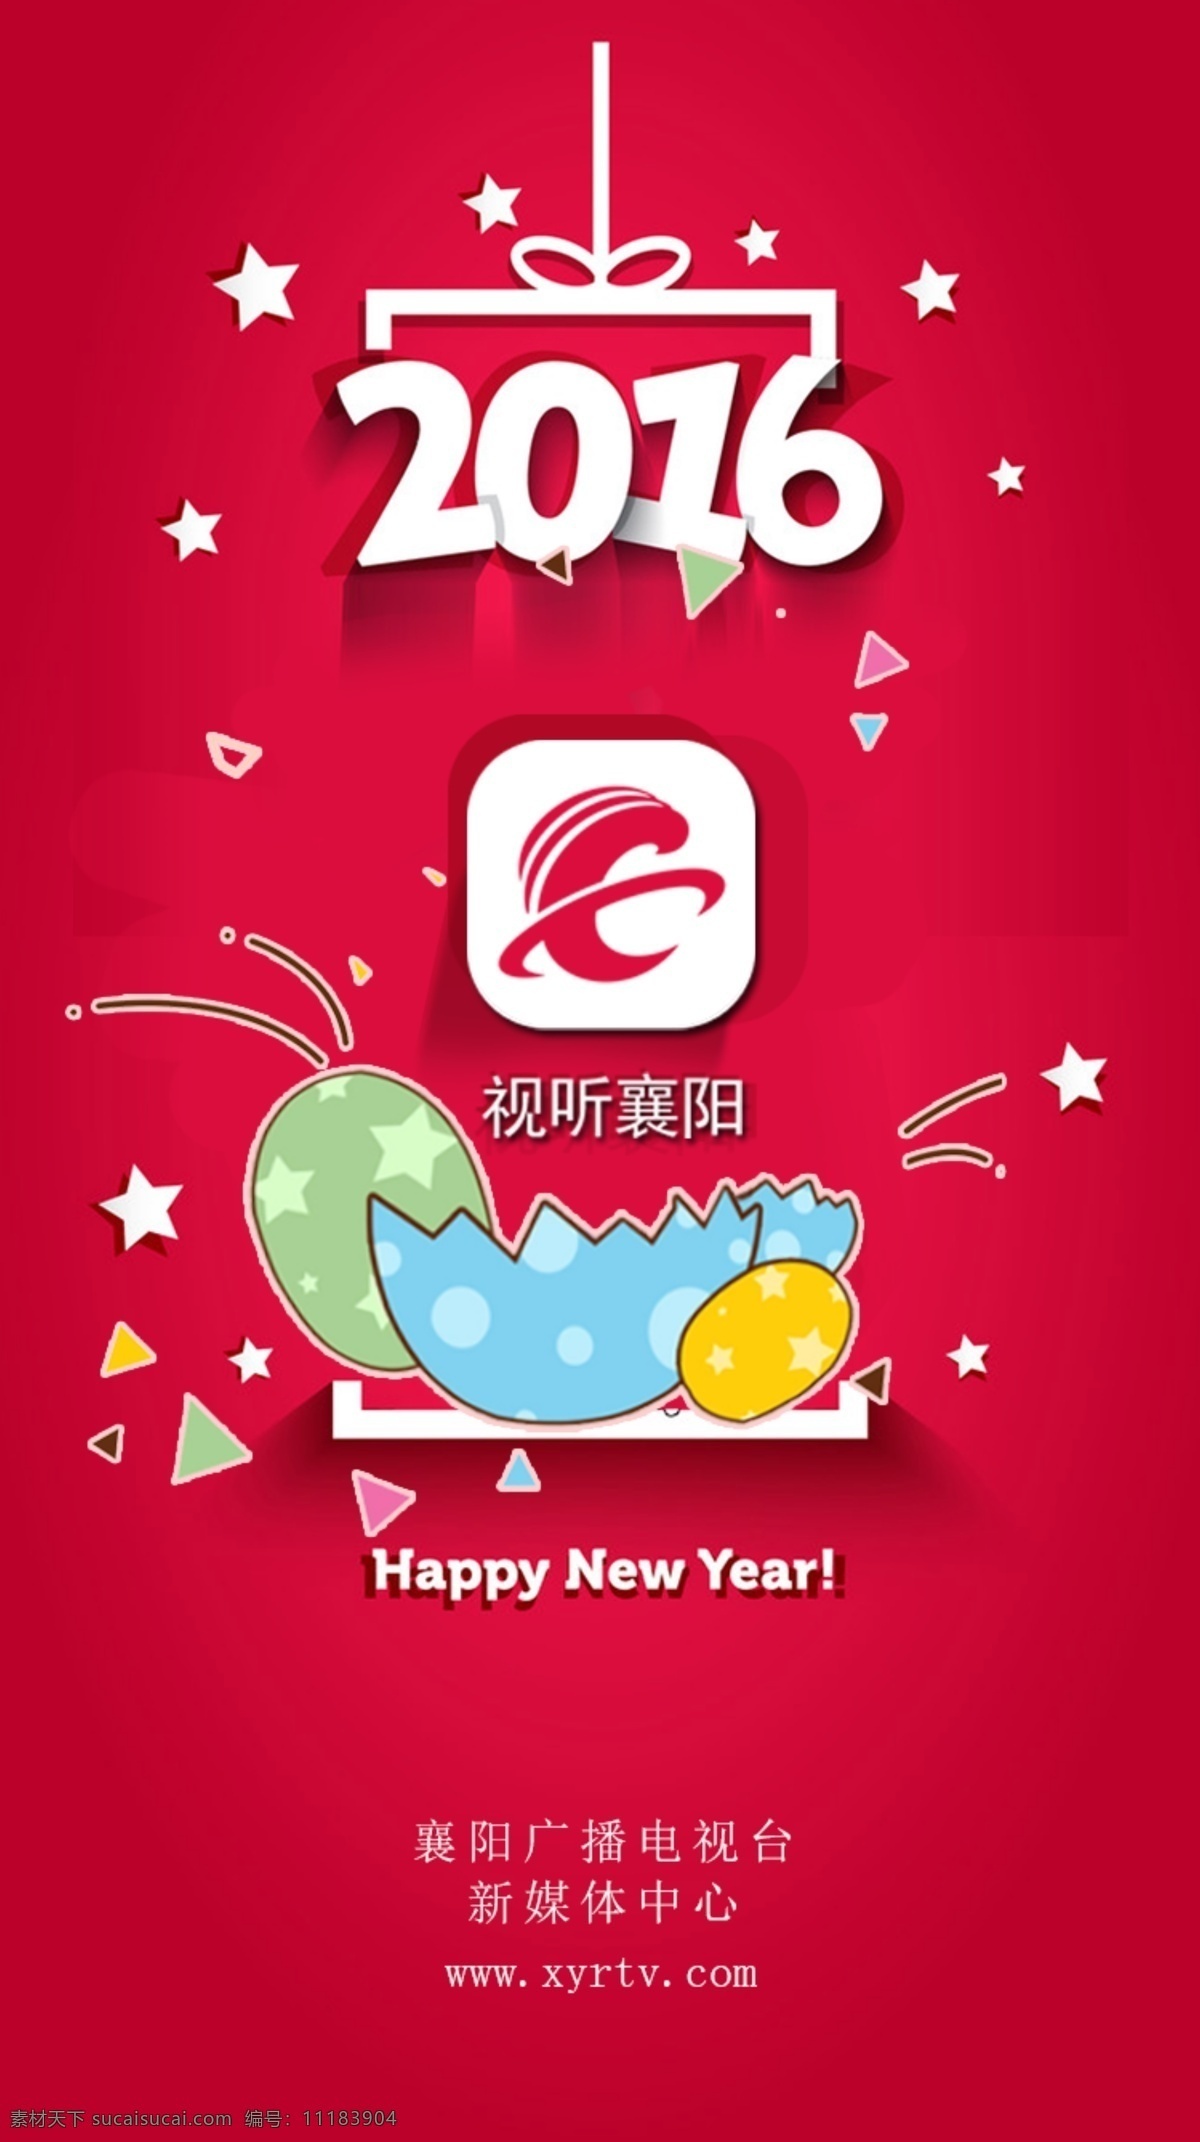 手机 app 开机 页面 2016 新年 快乐 开机页面 新年快乐 红色